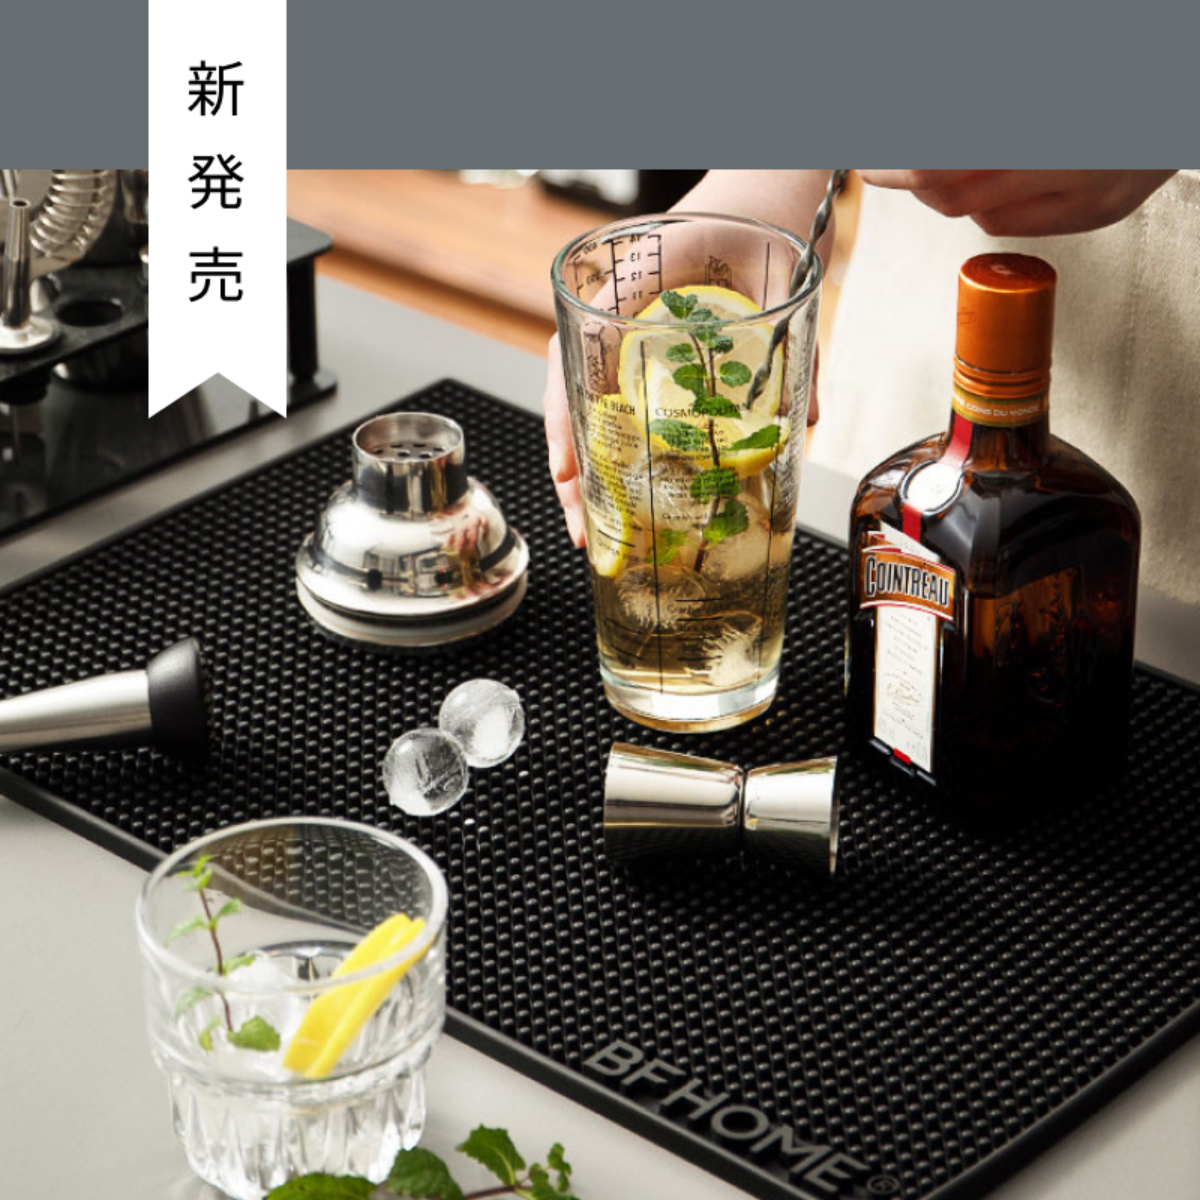 水切りテーブルマット｜凸凹デザインで、空気の流通がよくて、食器を乾燥しやすい